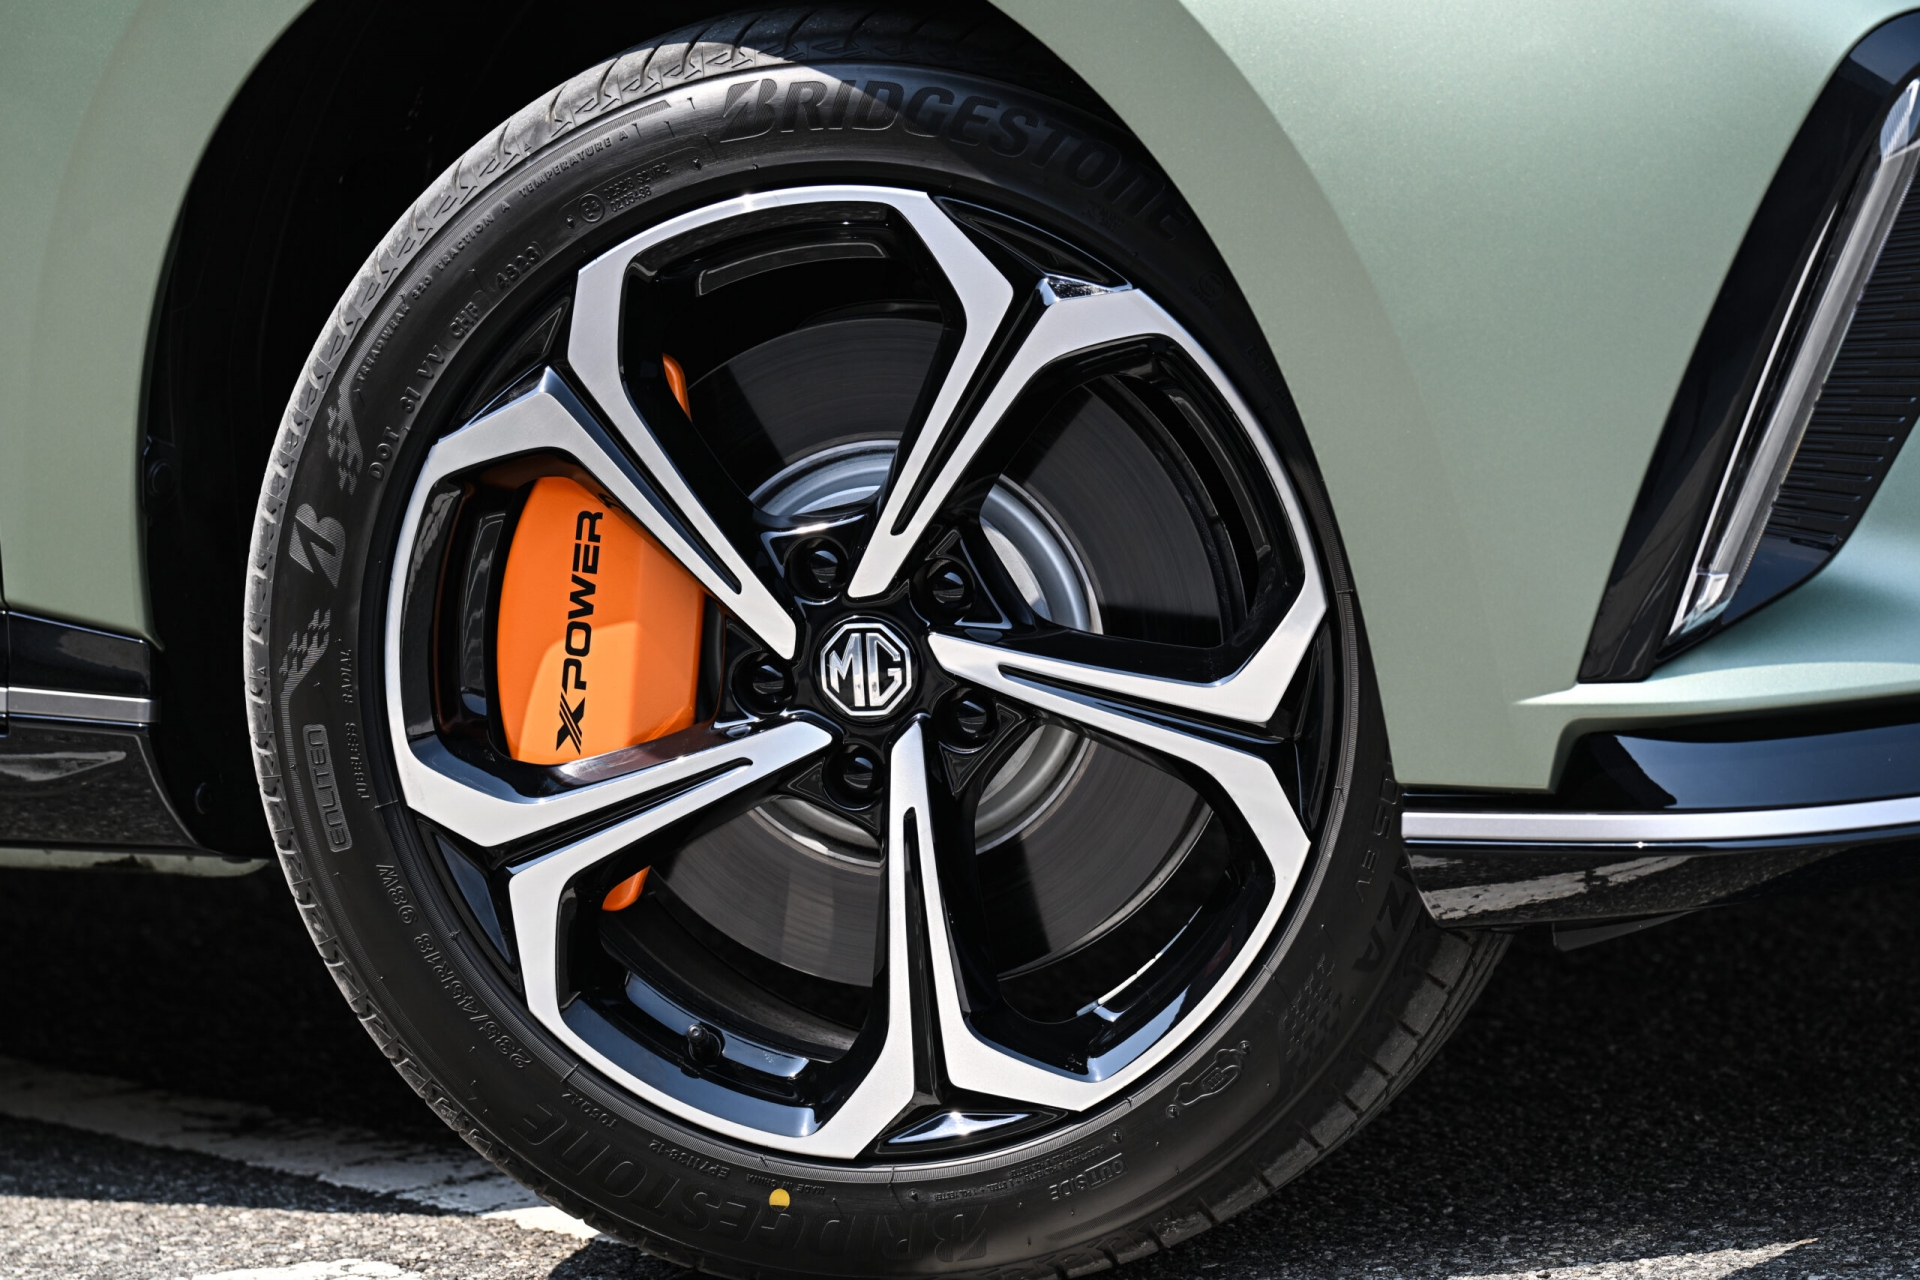 Bộ mâm hợp kim 18 inch bọc trong lốp Bridgestone Turanza cùng kẹp phanh màu cam